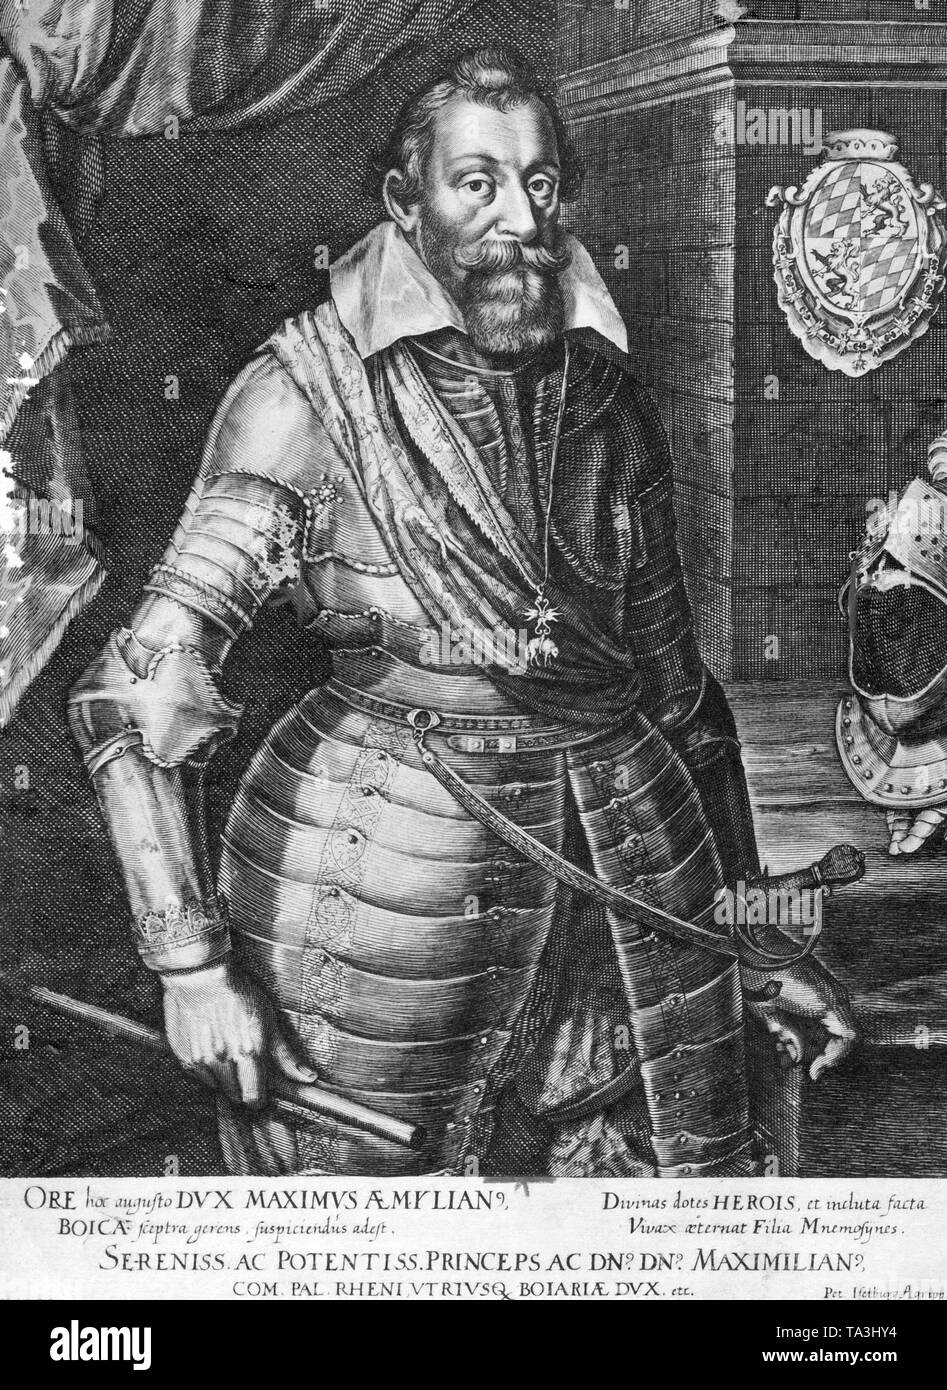 Questa fotografia mostra il Duca Massimiliano I di Baviera in armatura. Dal 1623 fu nominato elettore del Sacro Romano Impero. Immagine non datata. Foto Stock